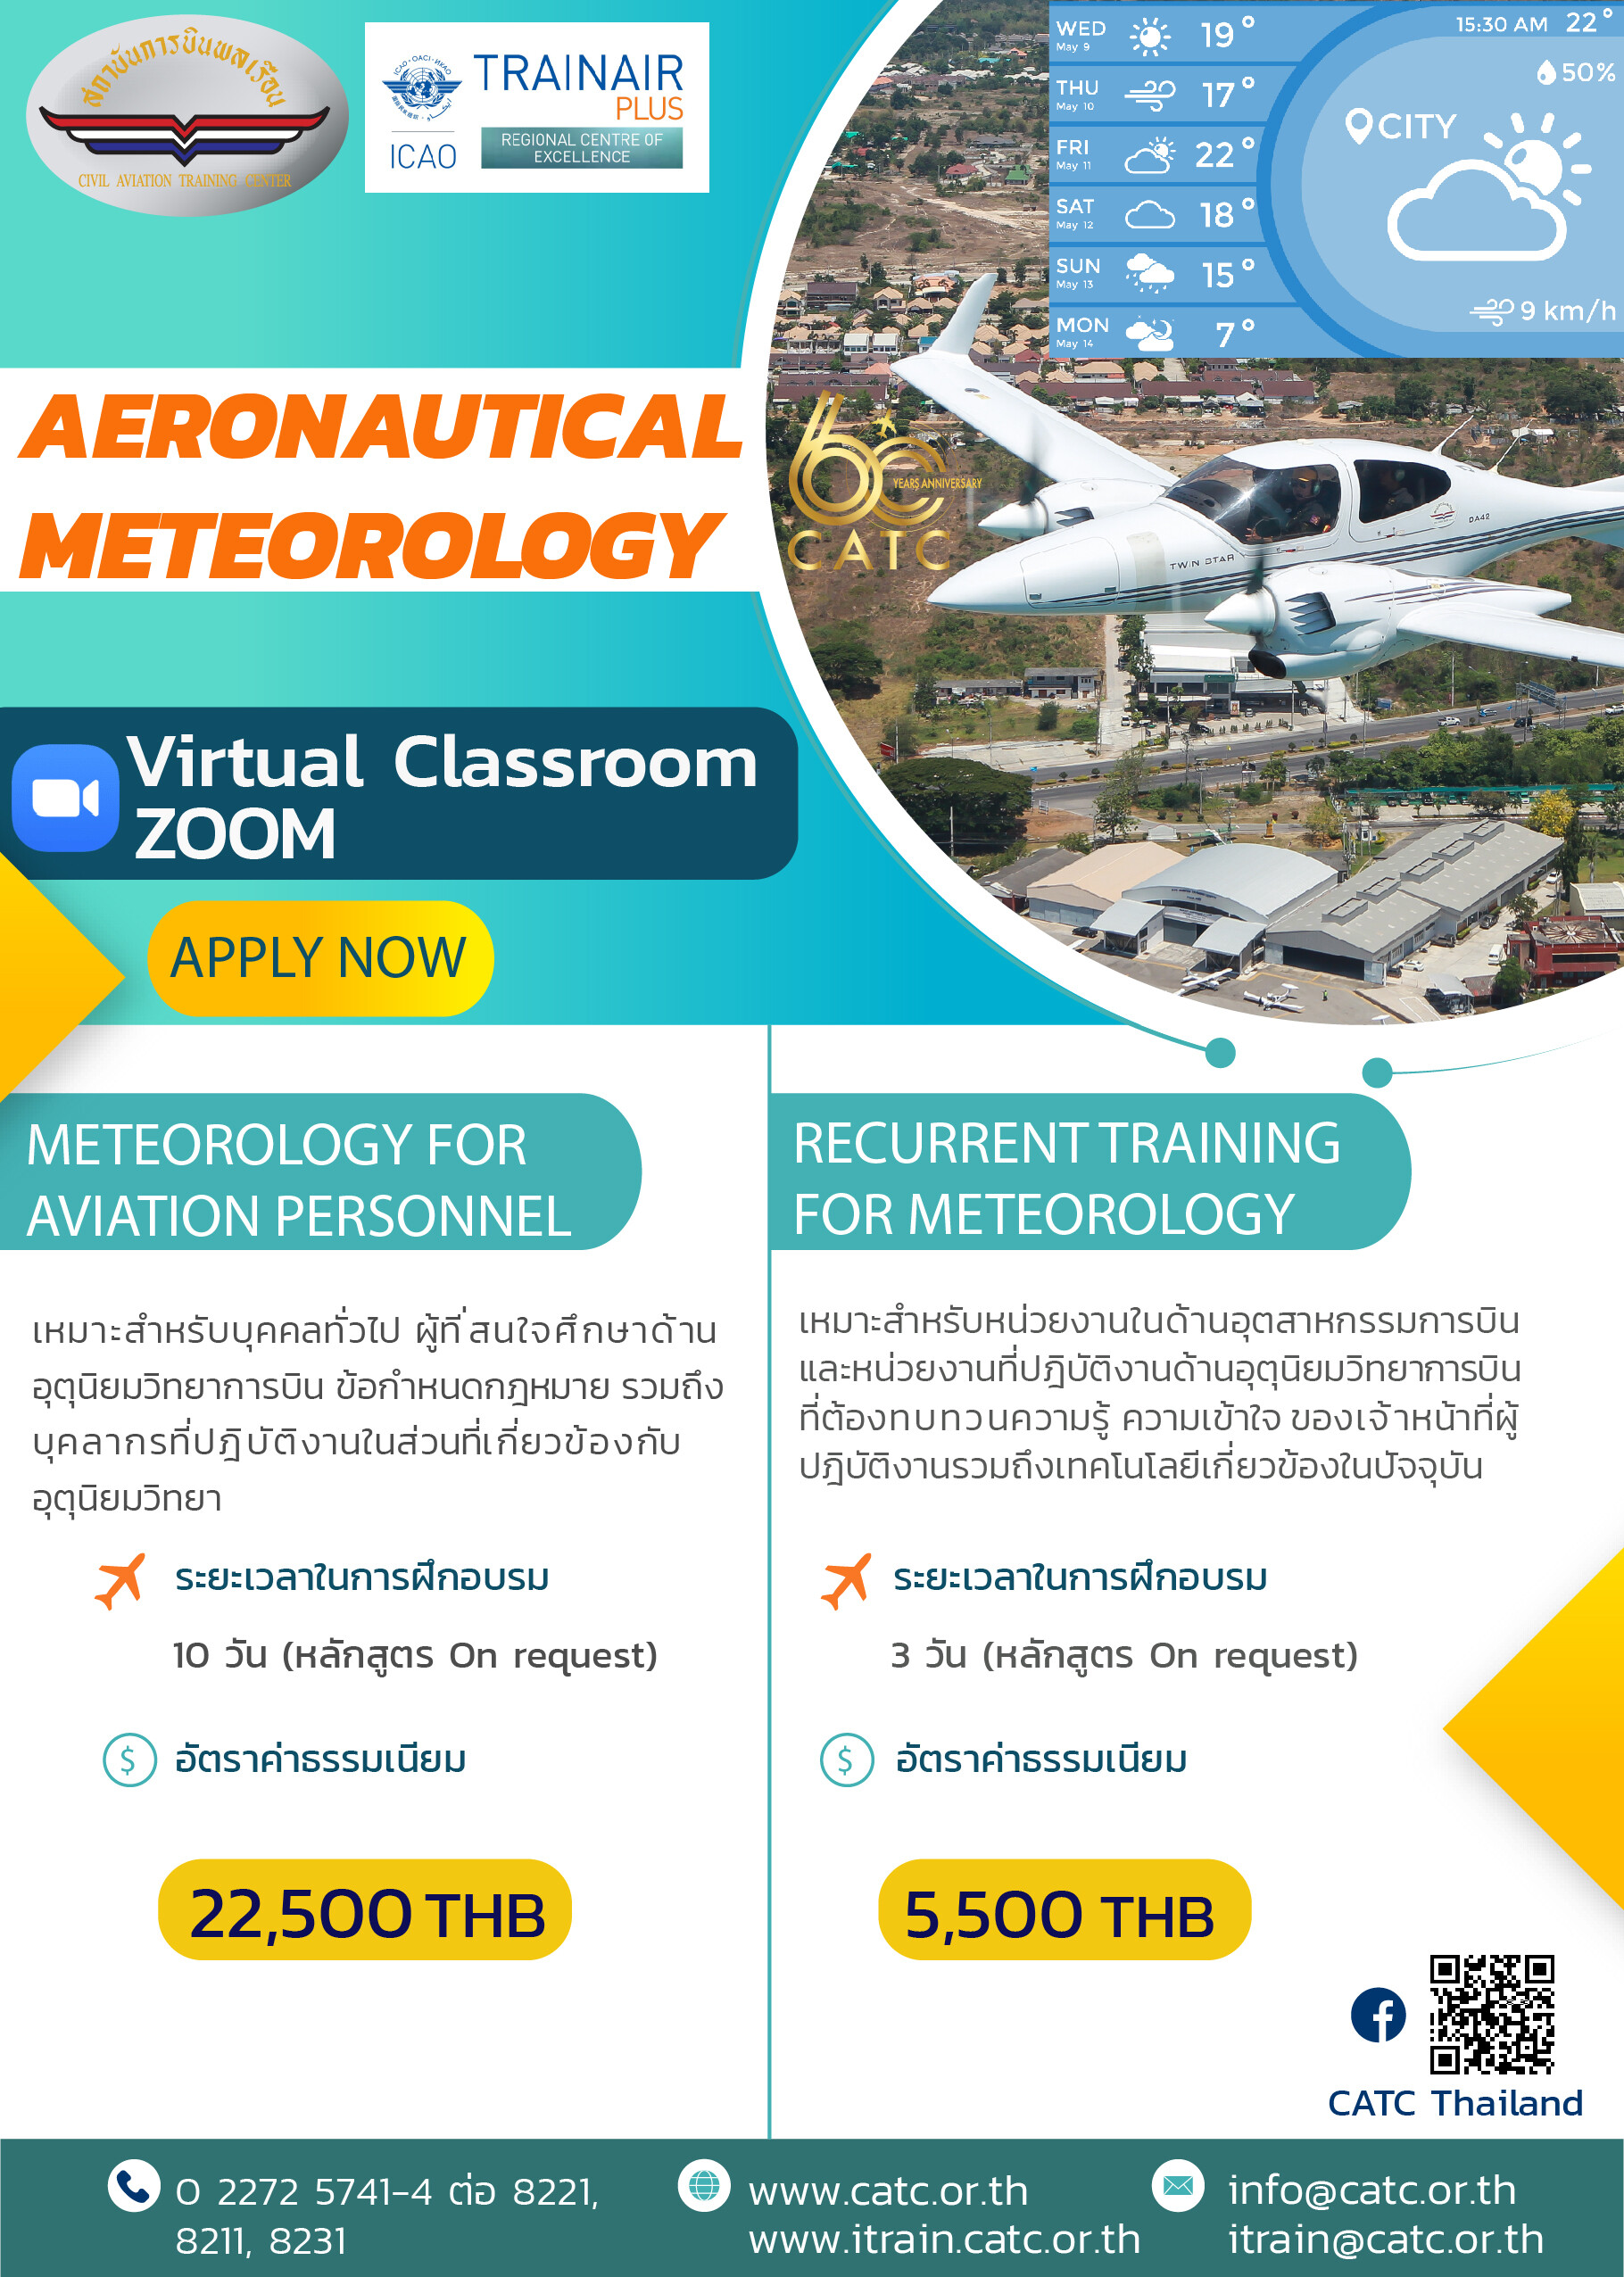 สถาบันการบินพลเรือน เปิดการฝึกอบรมหลักสูตร AERONAUTICAL METEOROLOGY